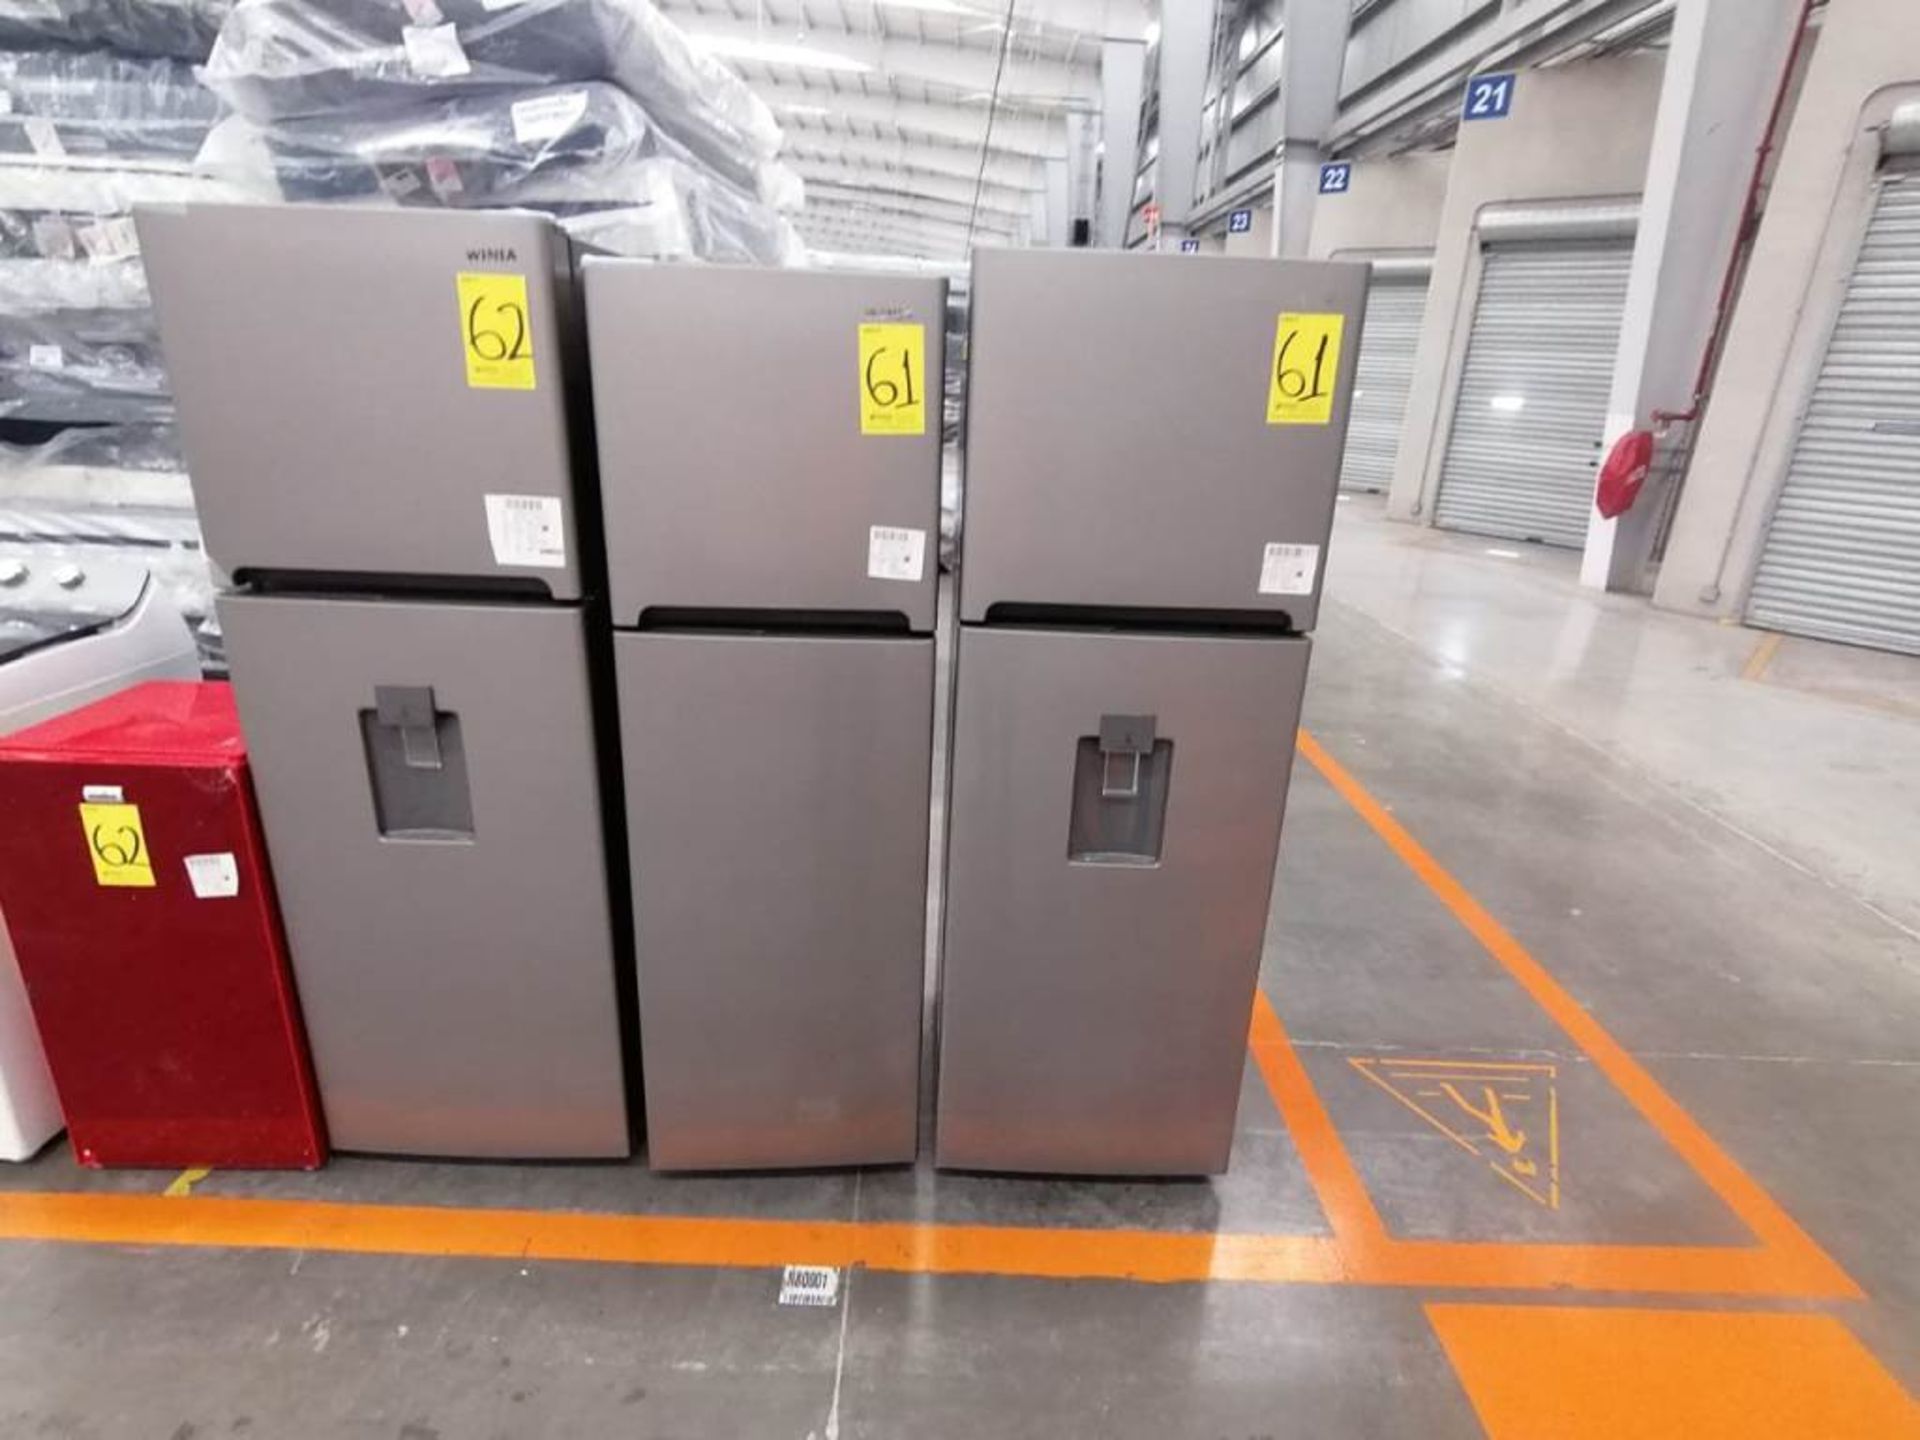 Lote de 2 Refrigeradores, Contiene 1 Refrigerador Marca Winia, Color Gris, Dos Puertas, Despachador - Image 6 of 13